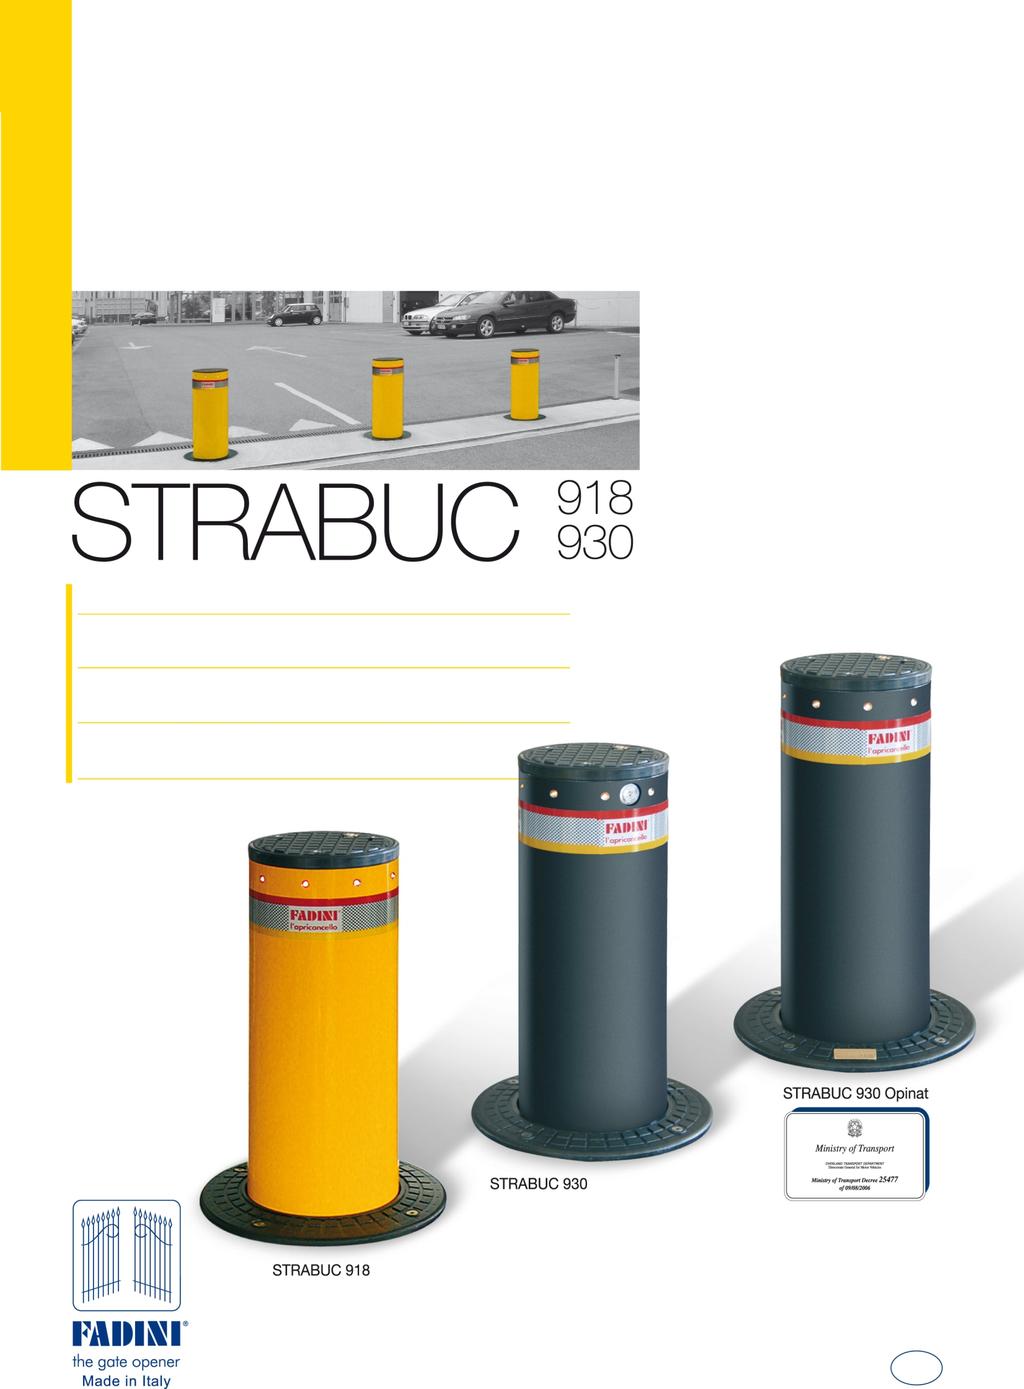 Chowane, hydrauliczne s³upki blokady wjazdu STRABUC 918 w wersji pomalowanej i ze stali nierdzewnej STRABUC